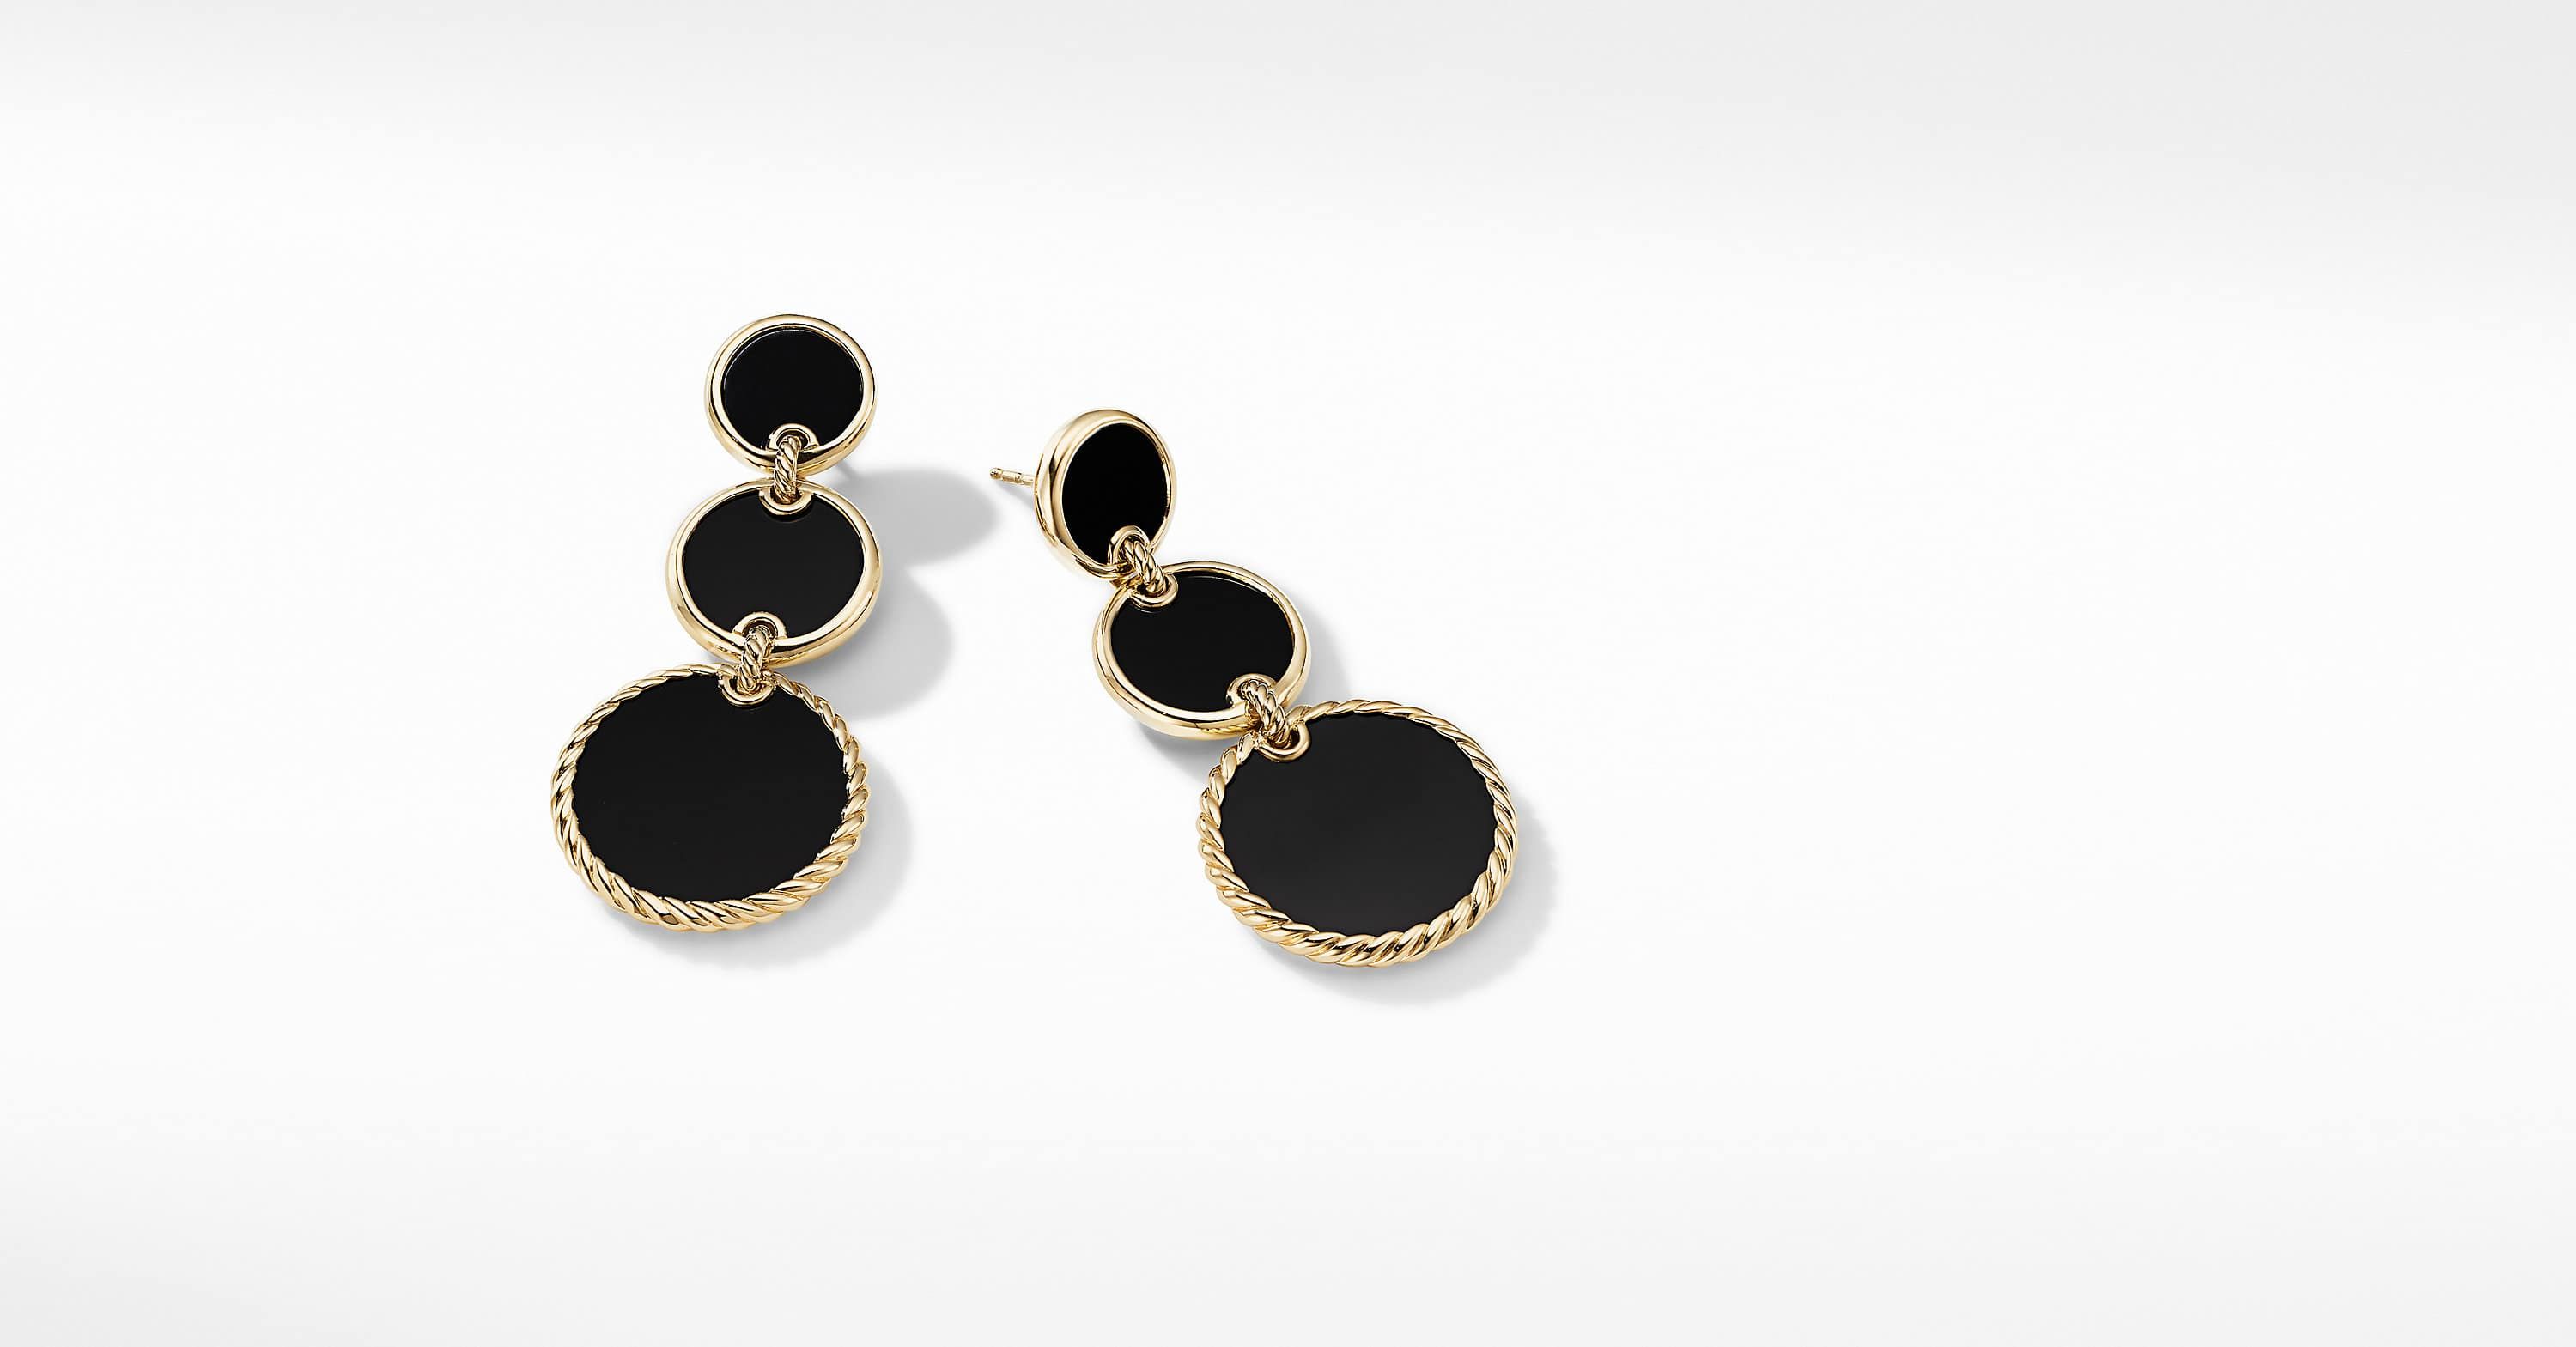 Triple Drop Earrings in 18K Yellow Gold with Black Onyx